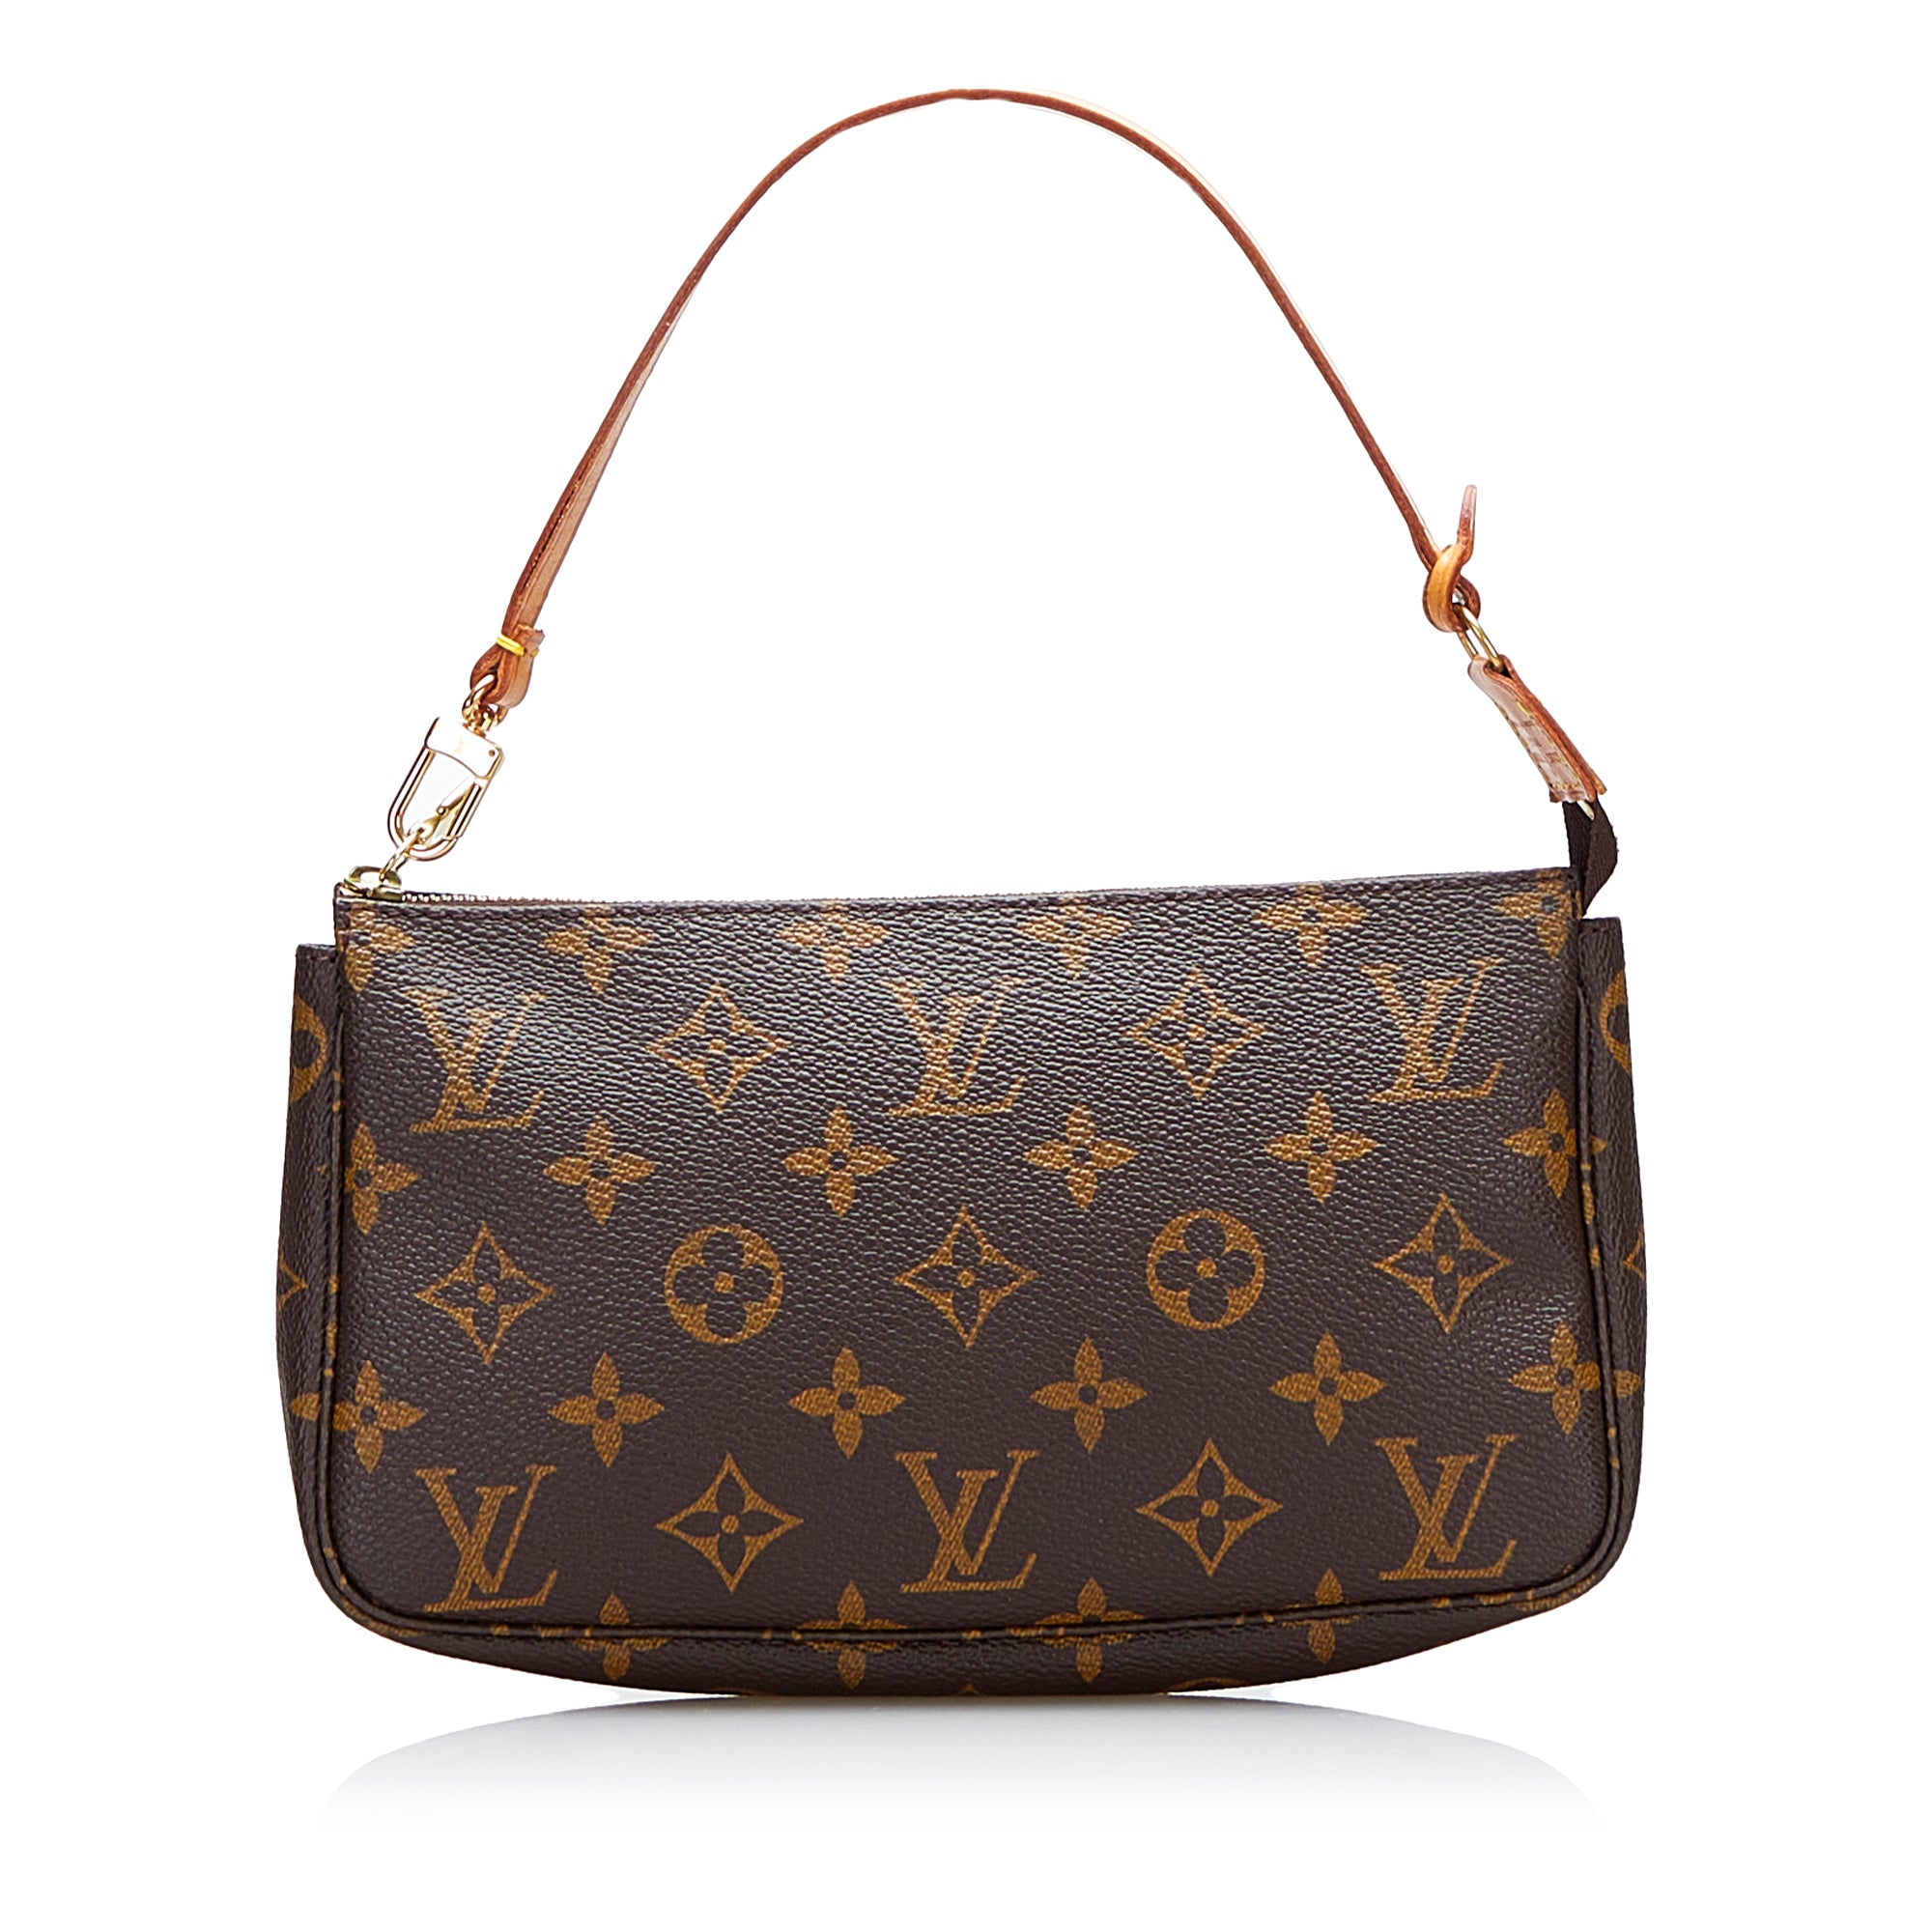 Louis Vuitton - Authenticated Pochette Accessoire Clutch Bag - Linen Brown for Women, Good Condition